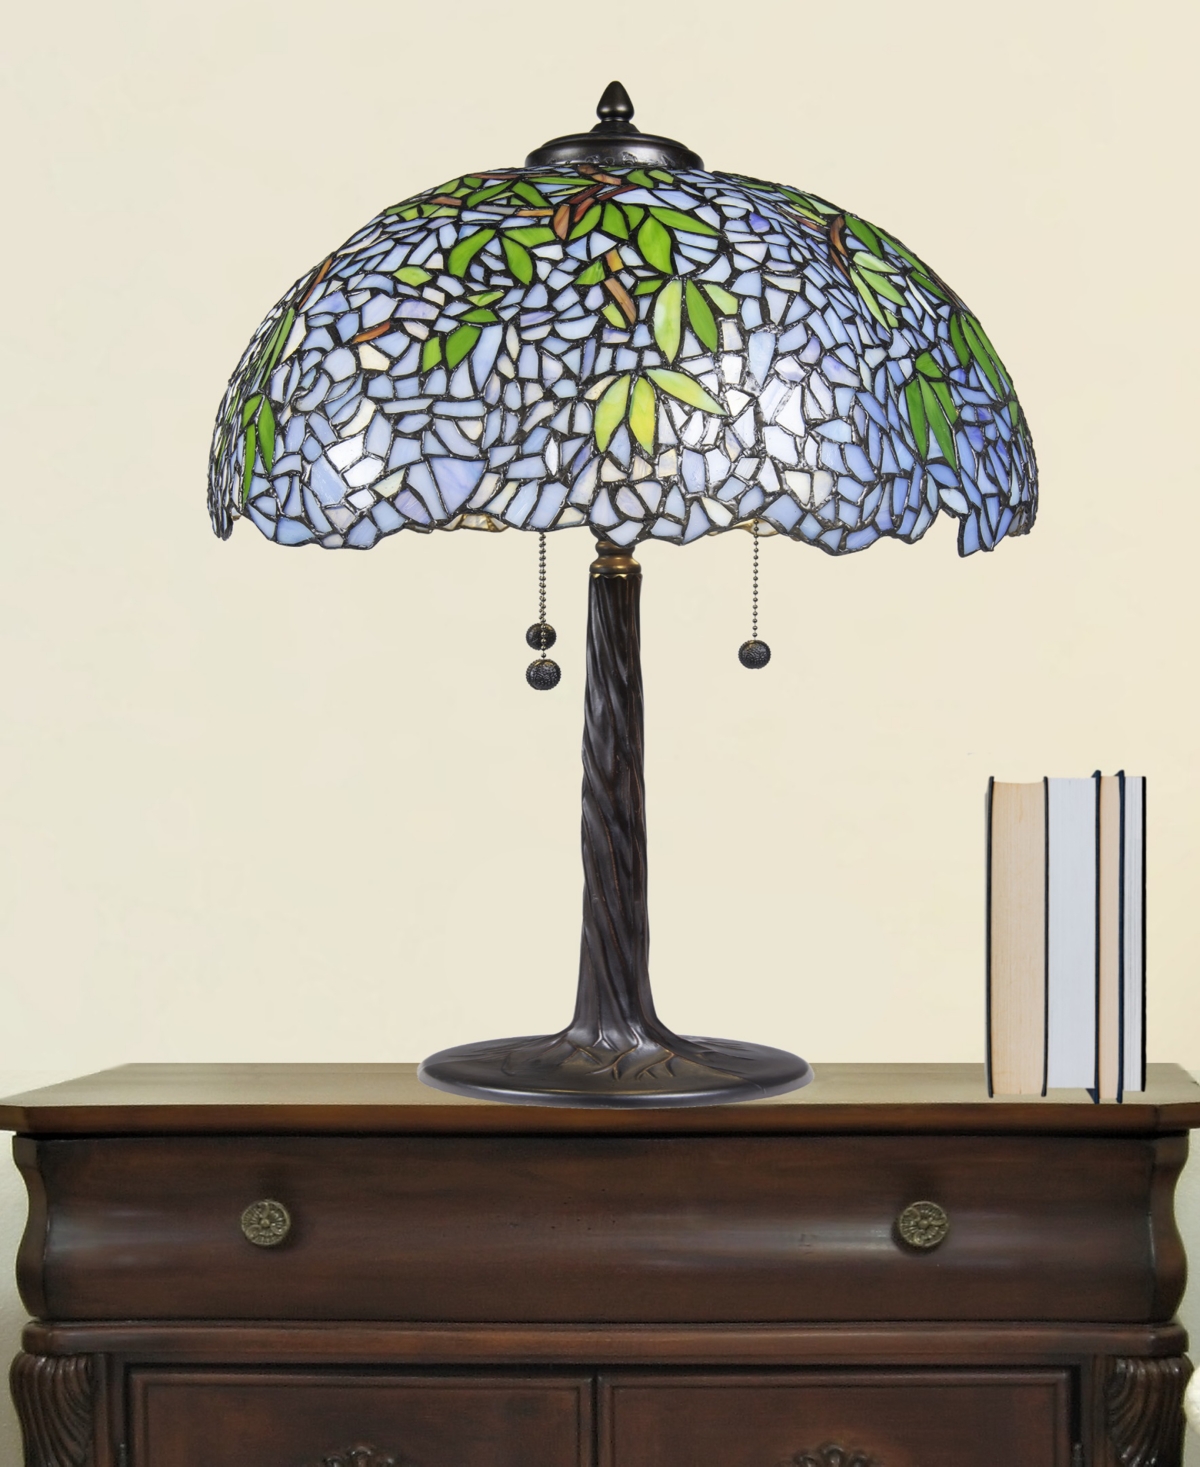 Shop Dale Tiffany 29.5" Tall Porto Wisteria Tiffany Style Table Lamp In Multi-color